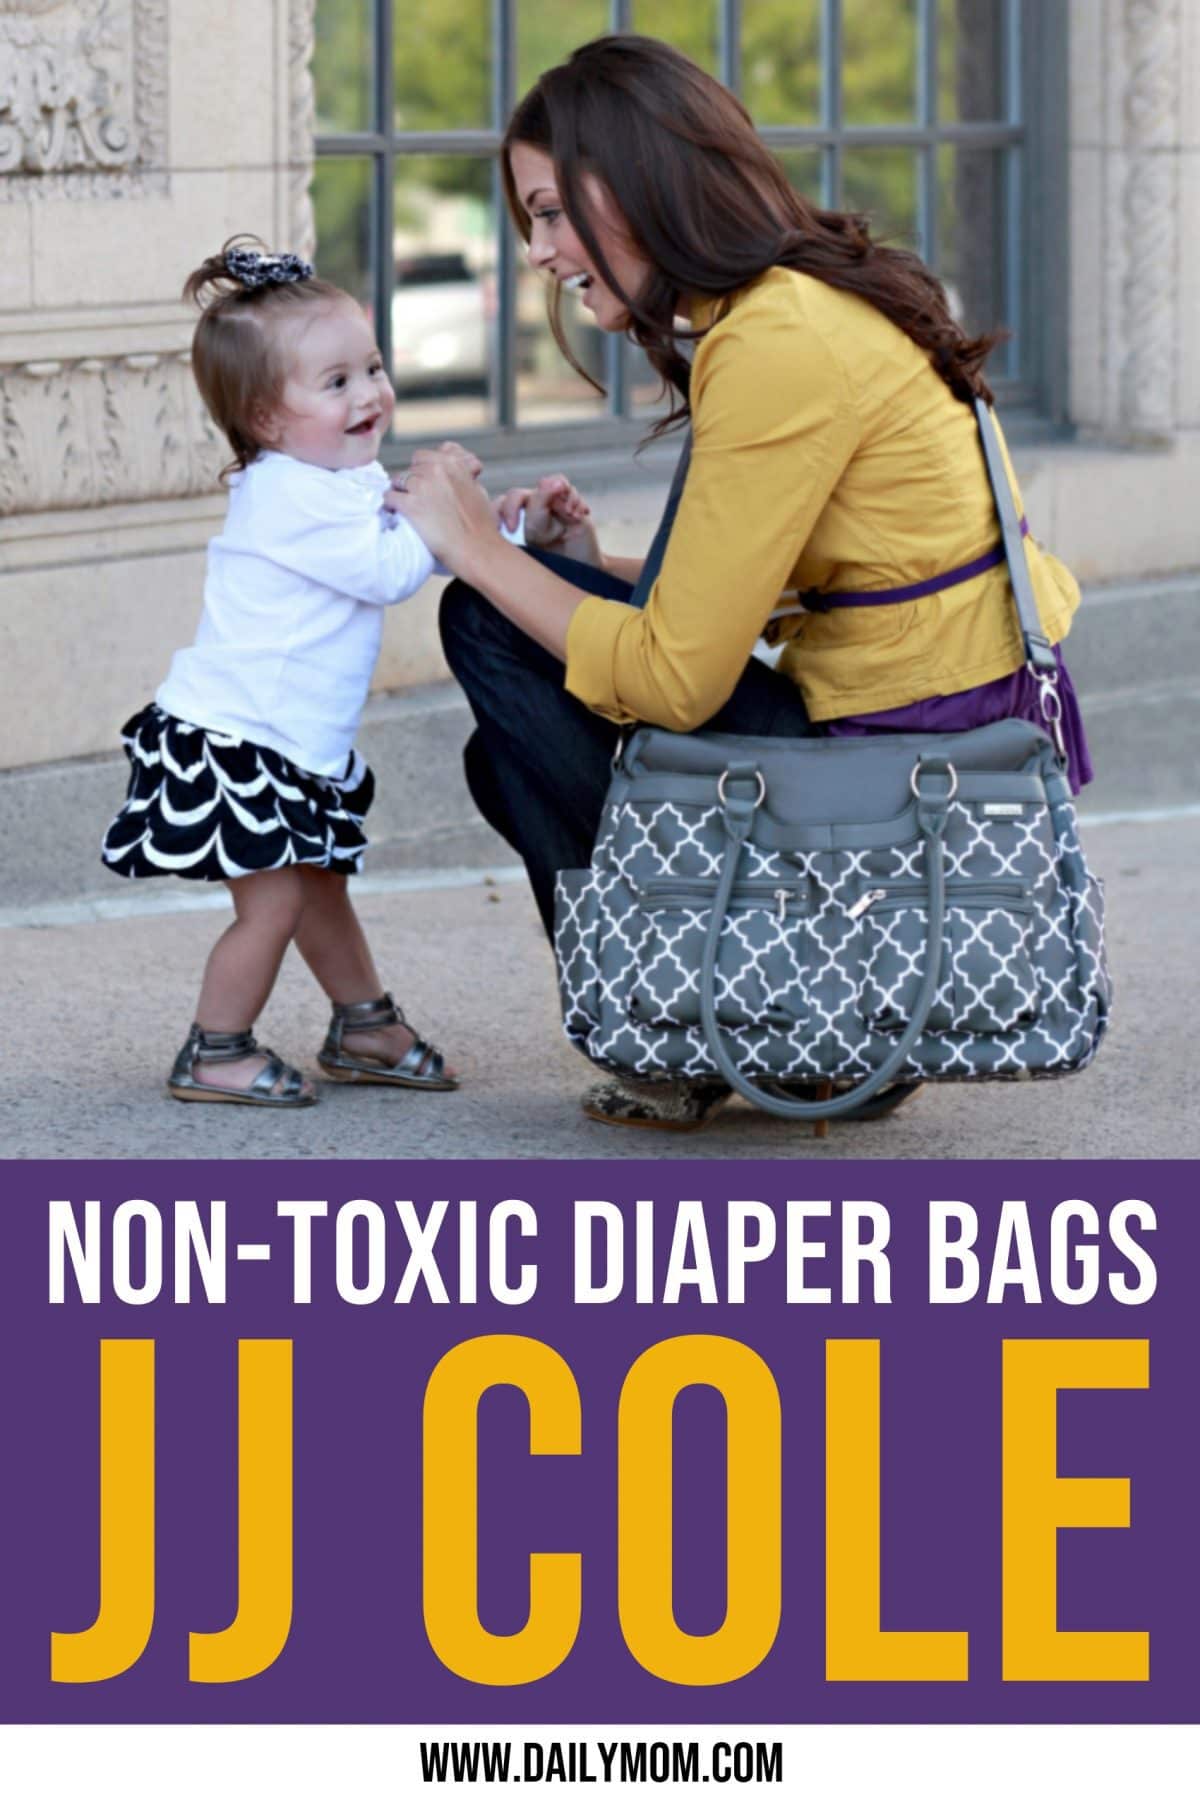 Daily Mom Parent Portal Jj Cole Diaper Bags